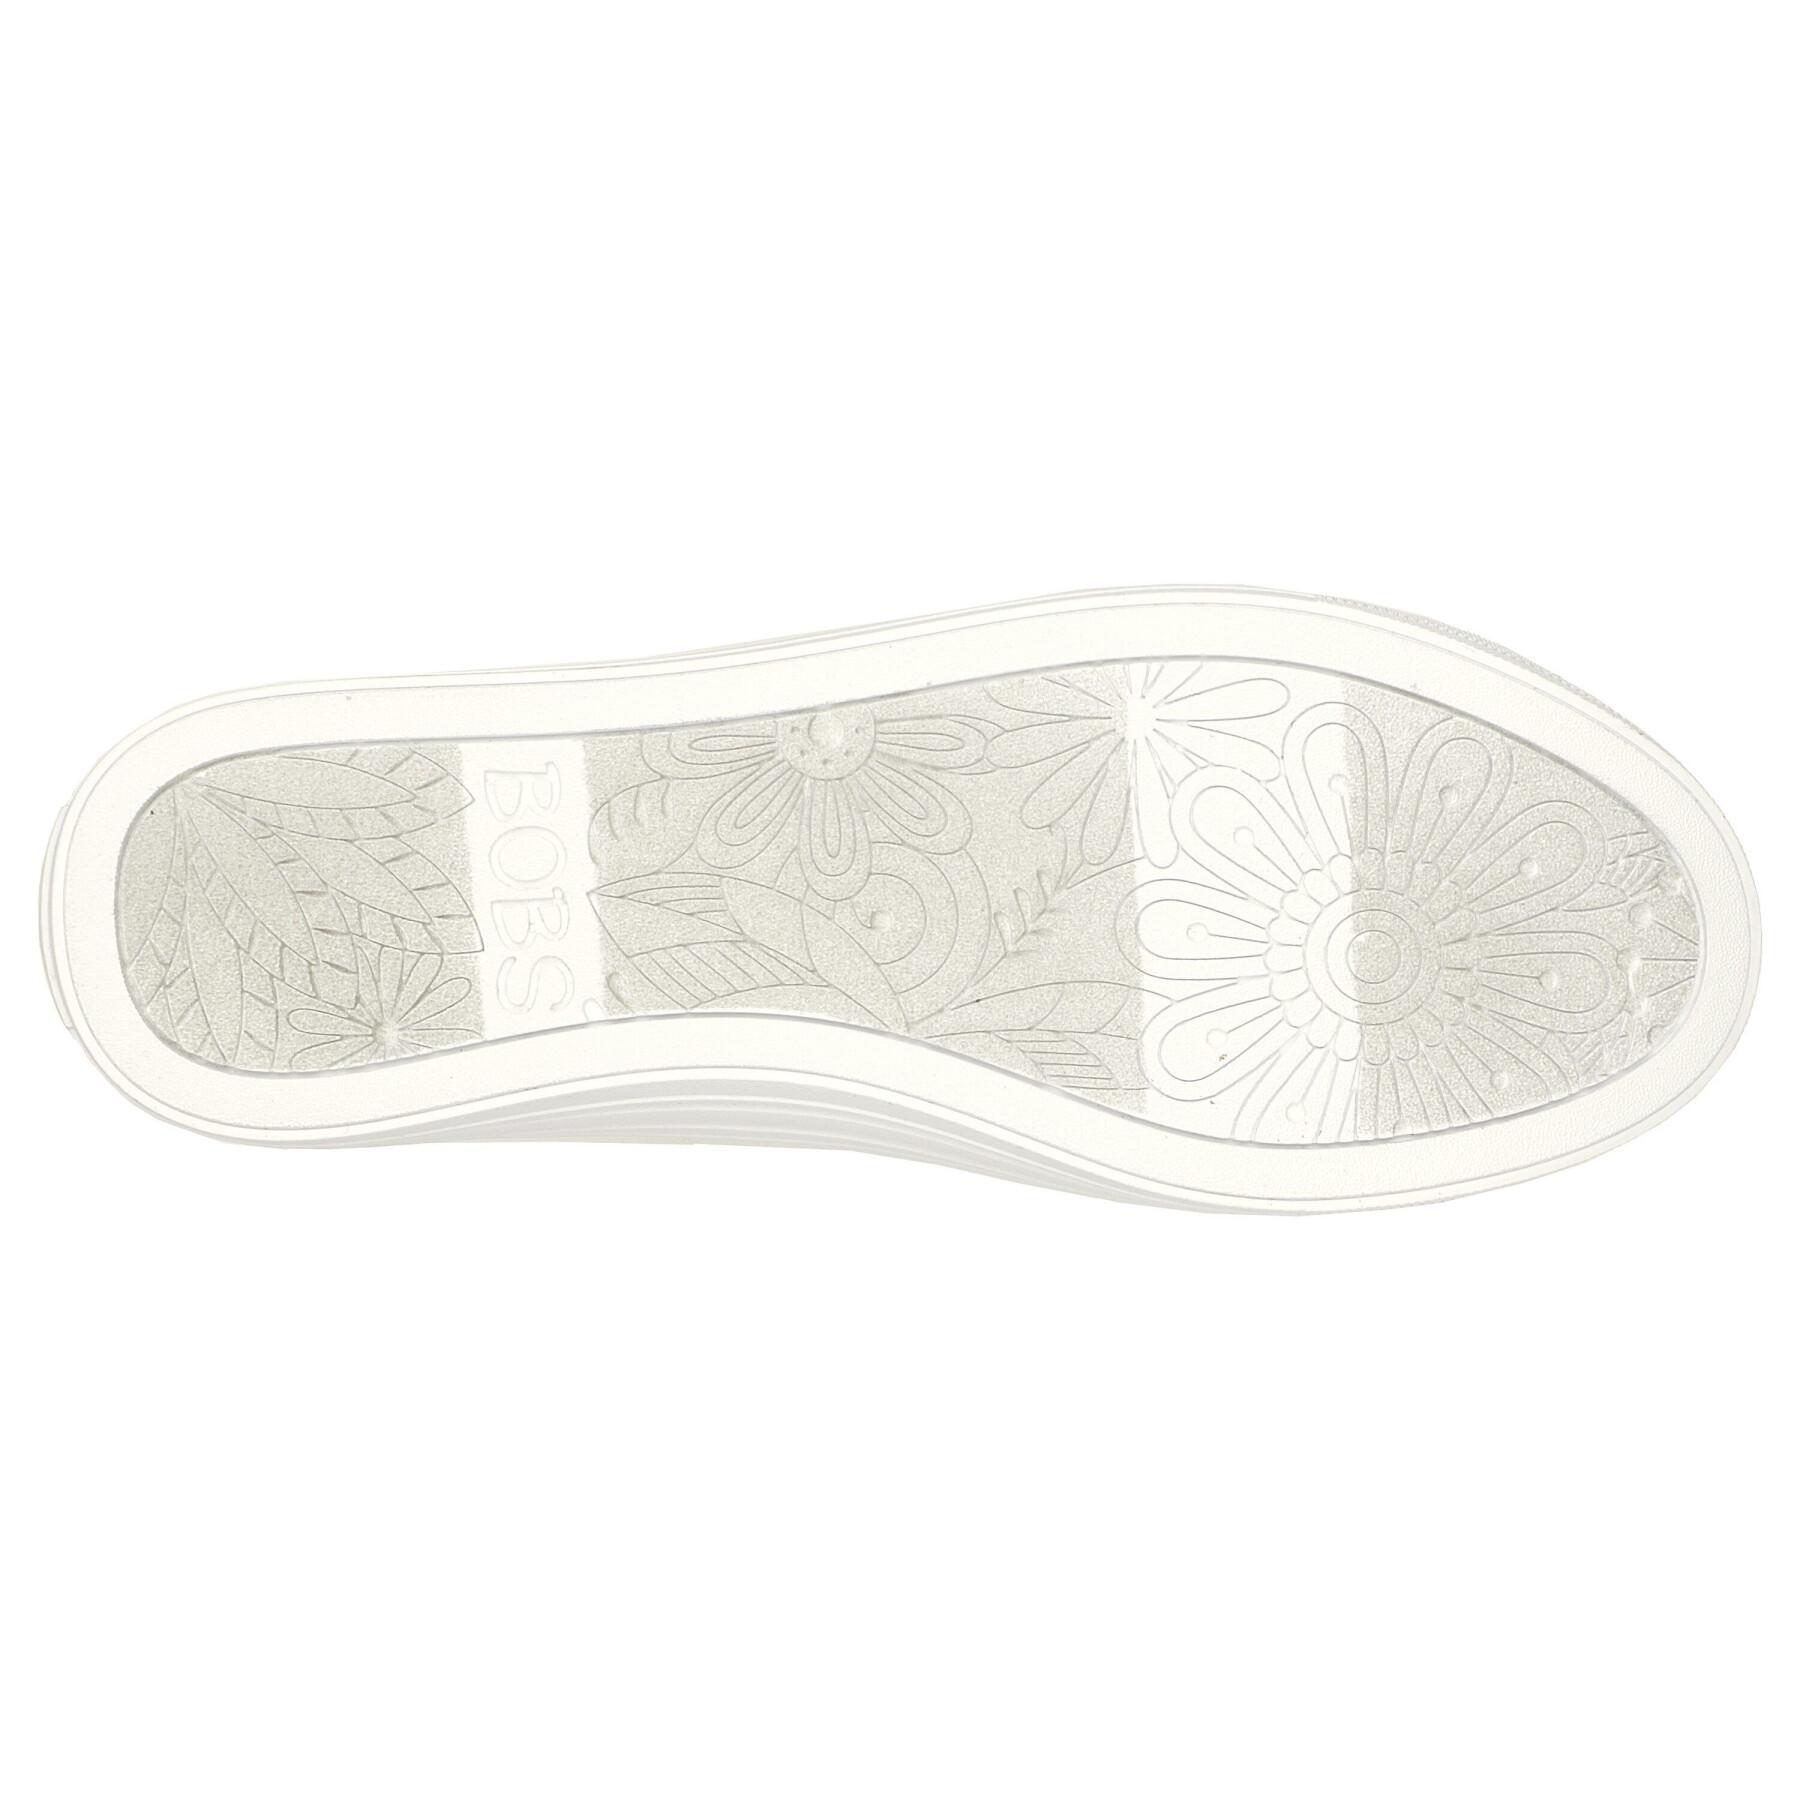 Zapatillas de deporte para mujer Skechers Bobs B Cool-All Corazon